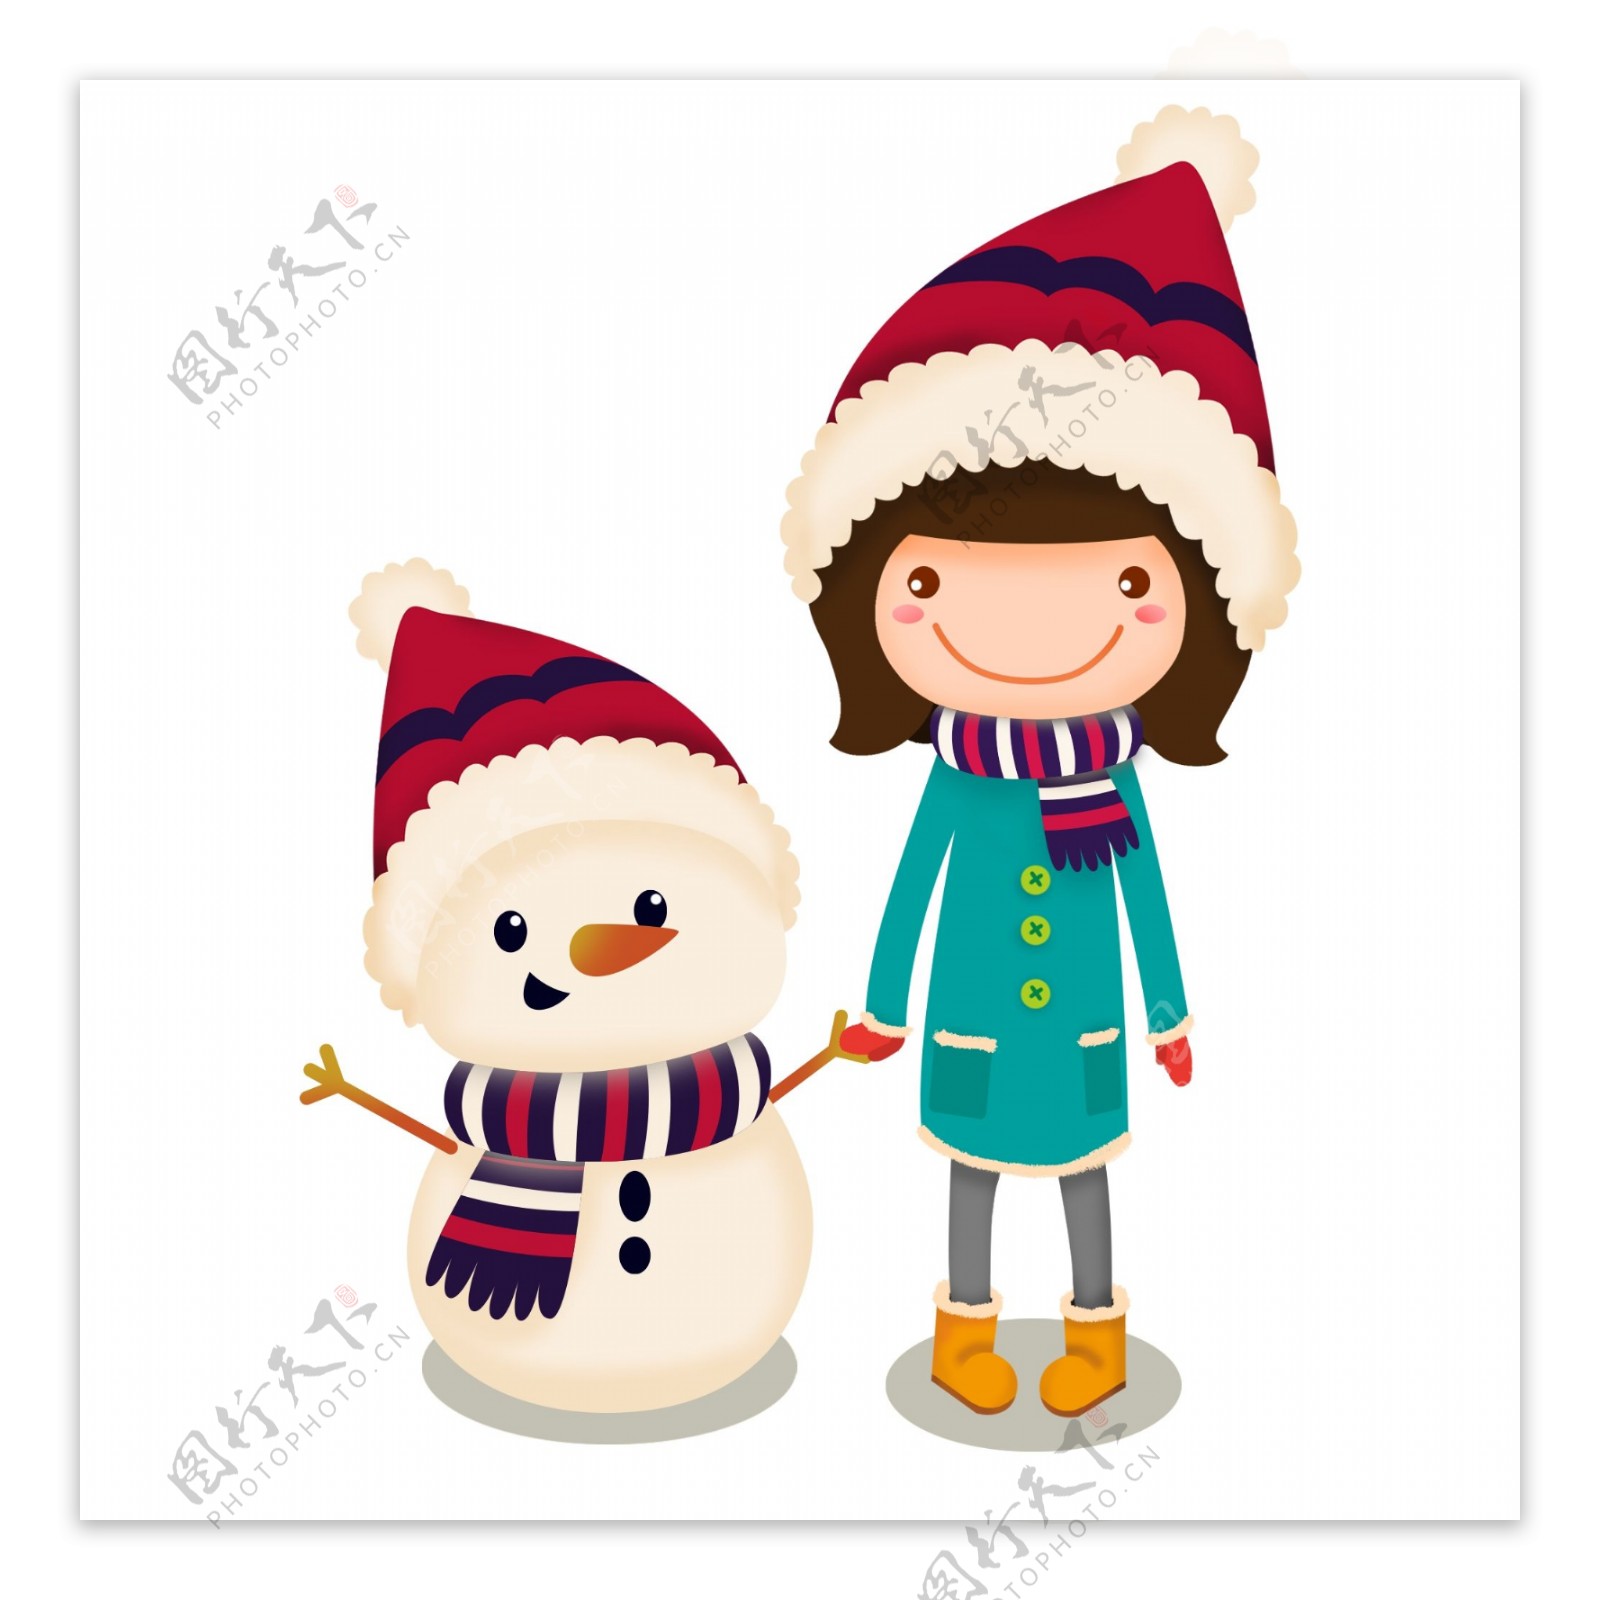 可爱卡通女孩儿与雪人冬季插画